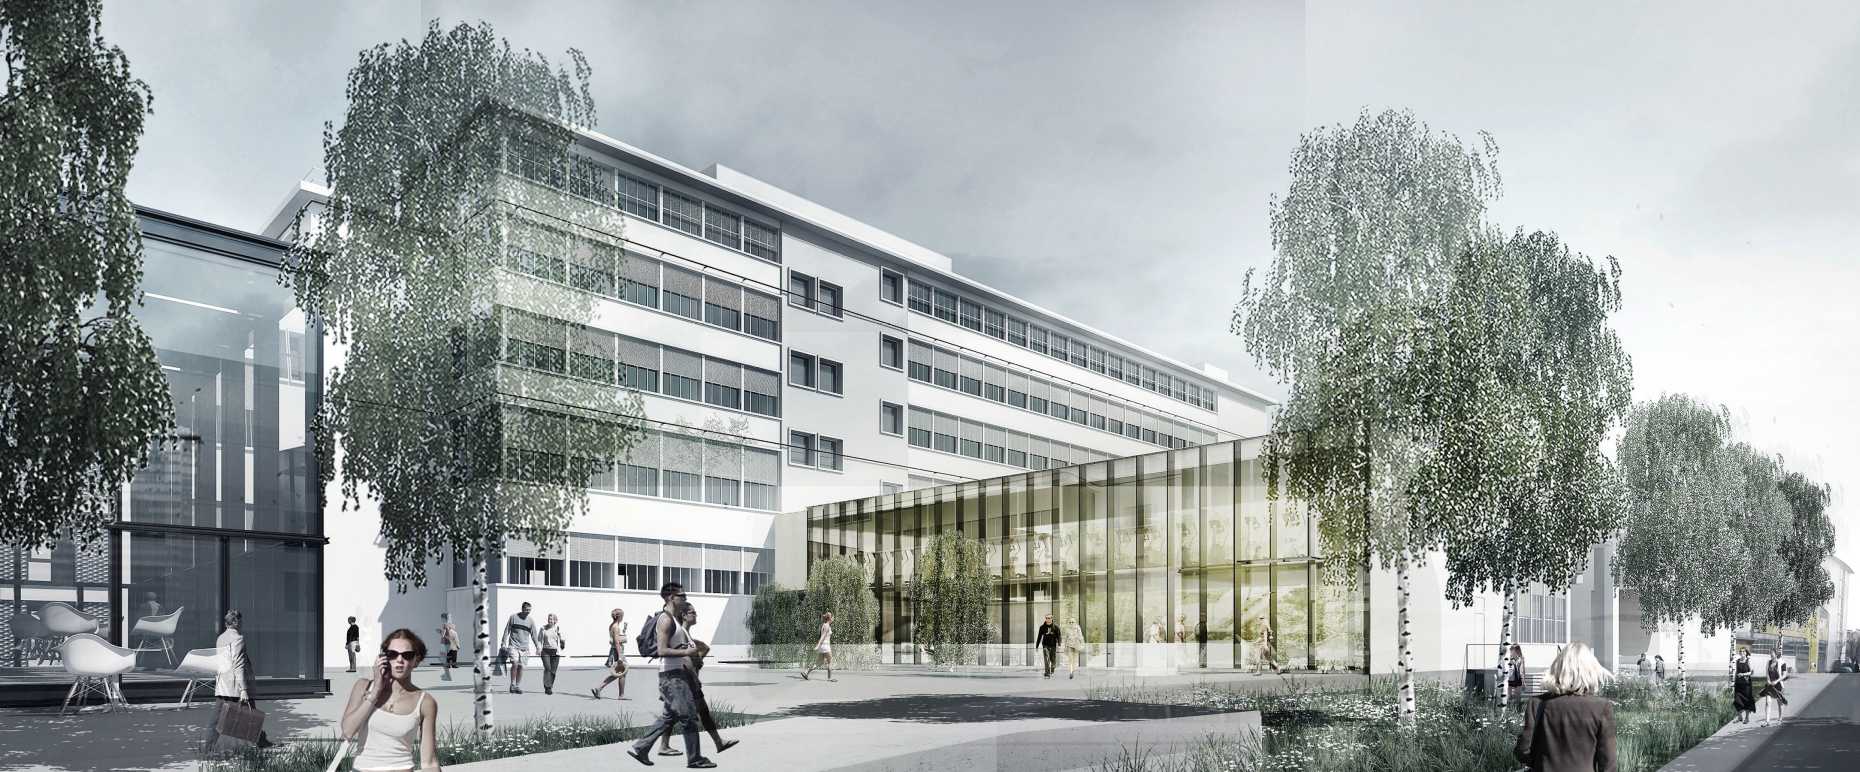 Vergrösserte Ansicht: Rendering des Logistikzentrums der ETH Zürich in Oerlikon (Architekten group8, Genf)